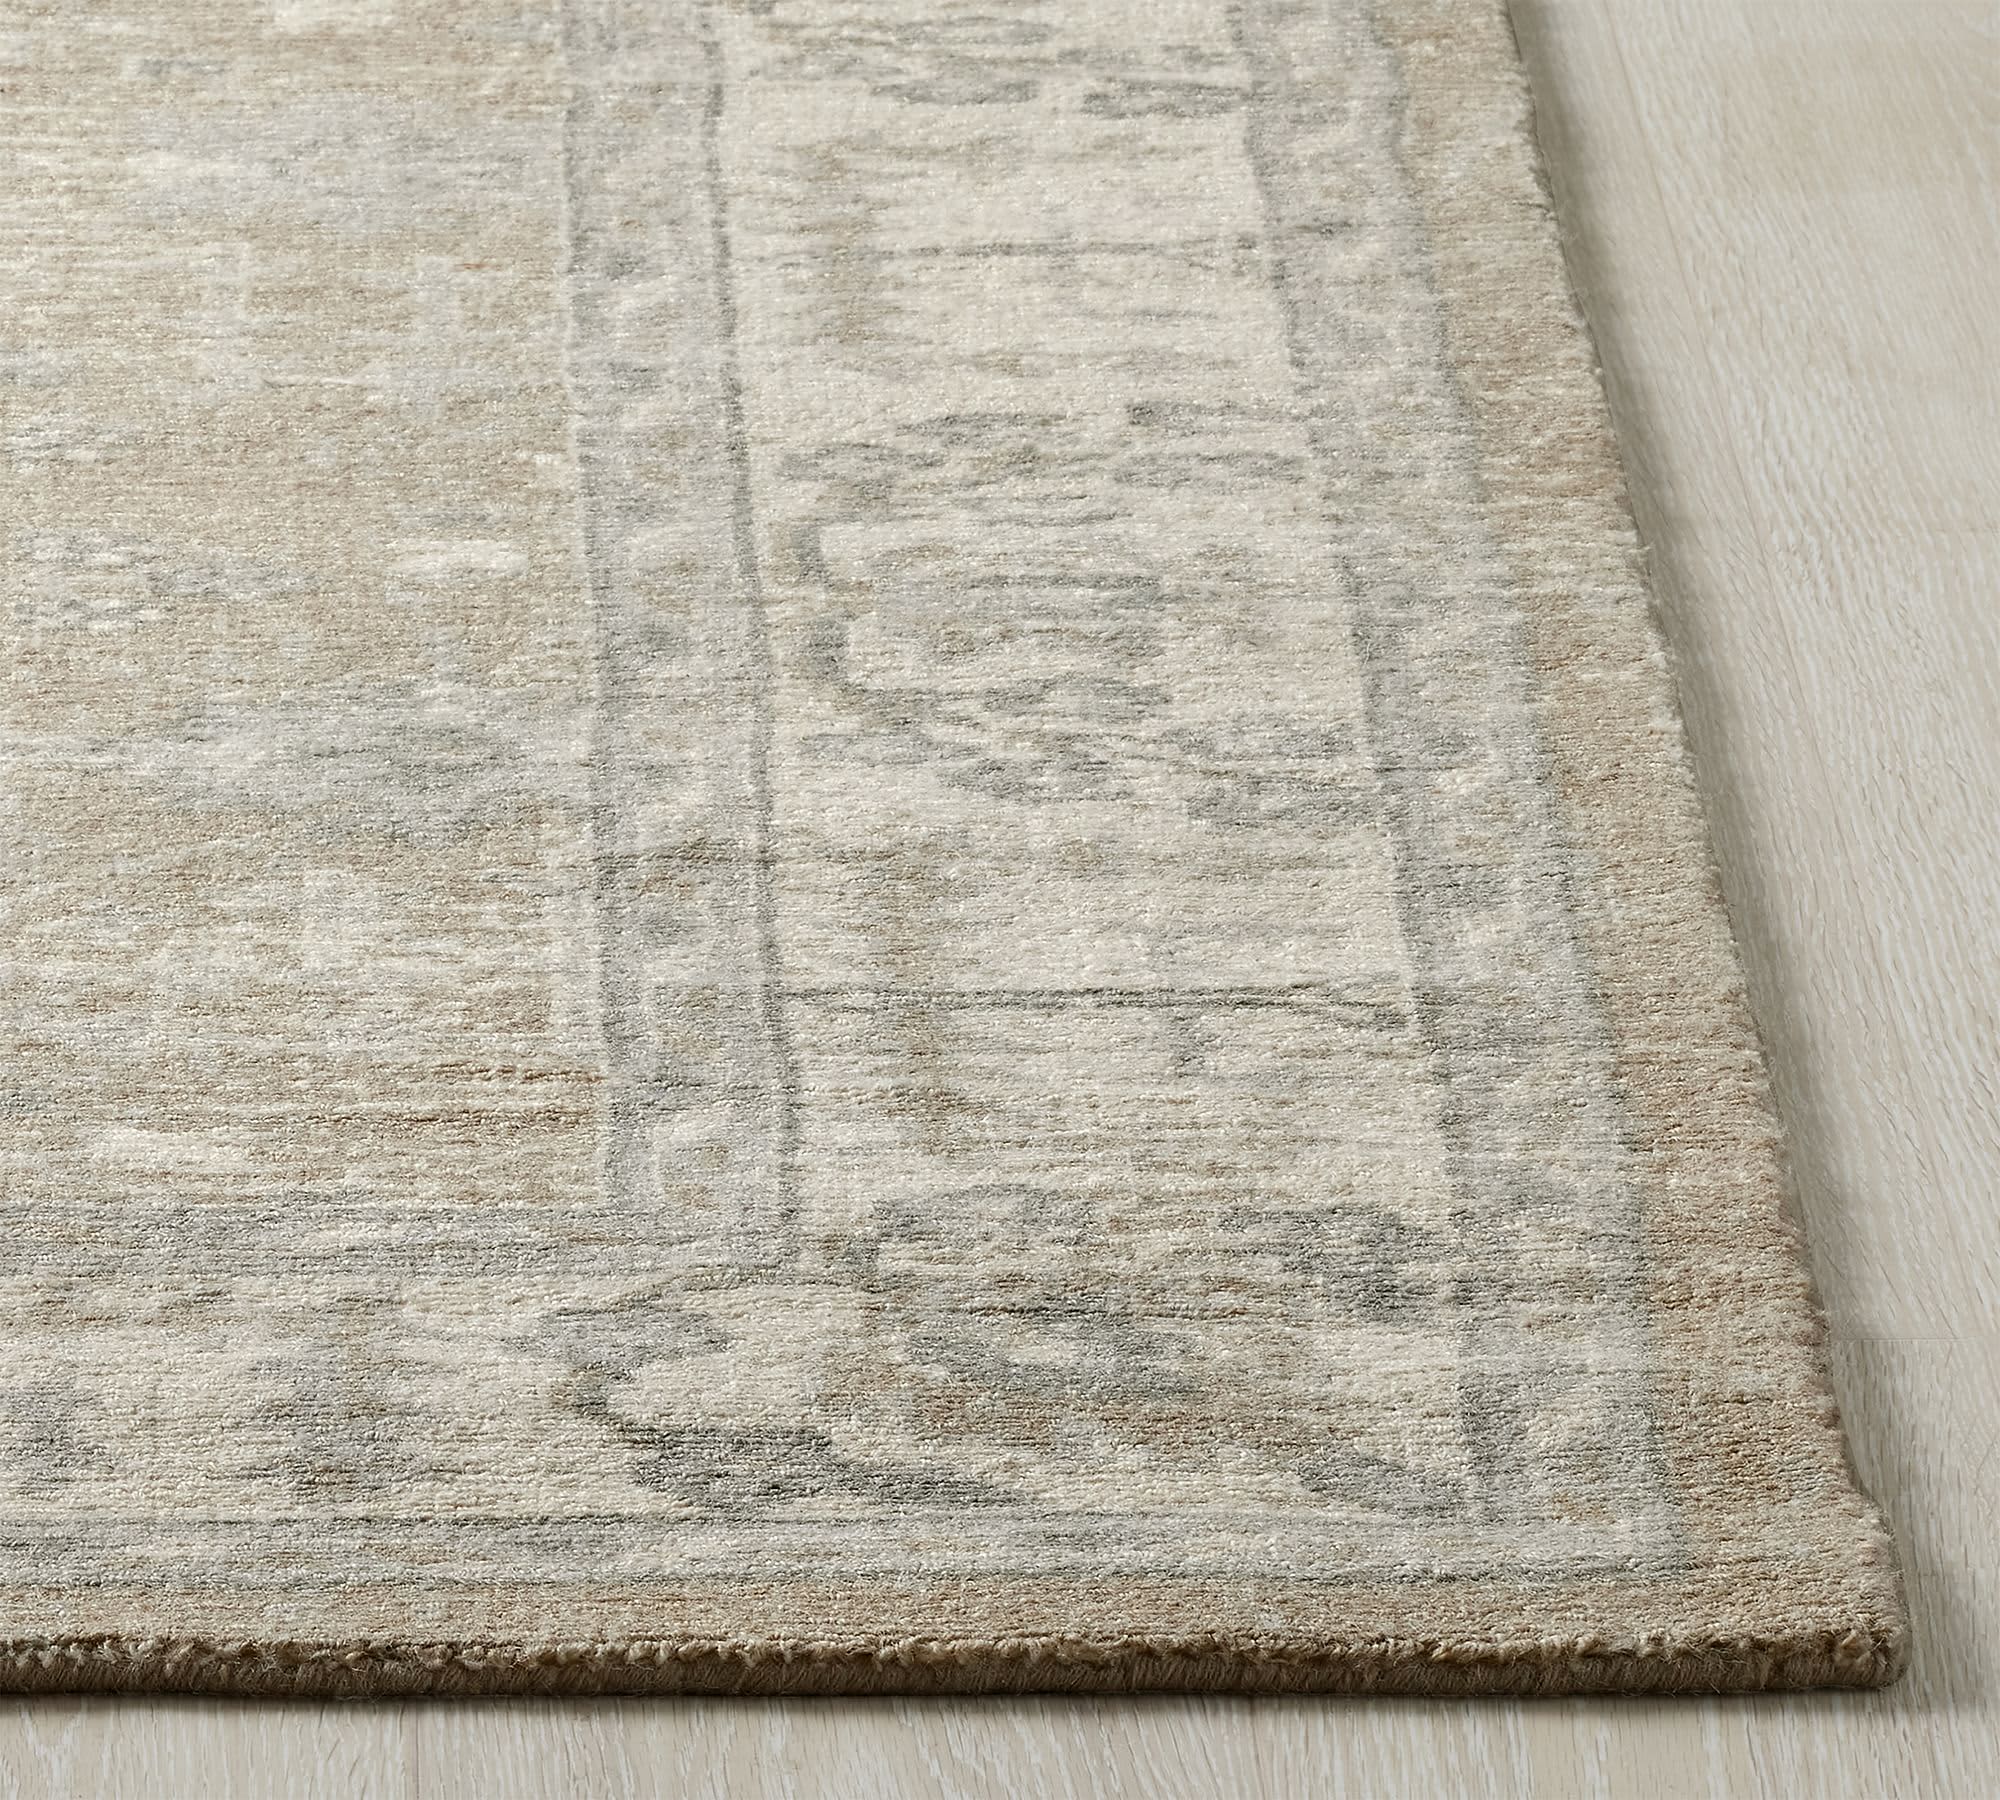 premium quality braided area rugs 5' X 7' handwoven indoor rugs carpet